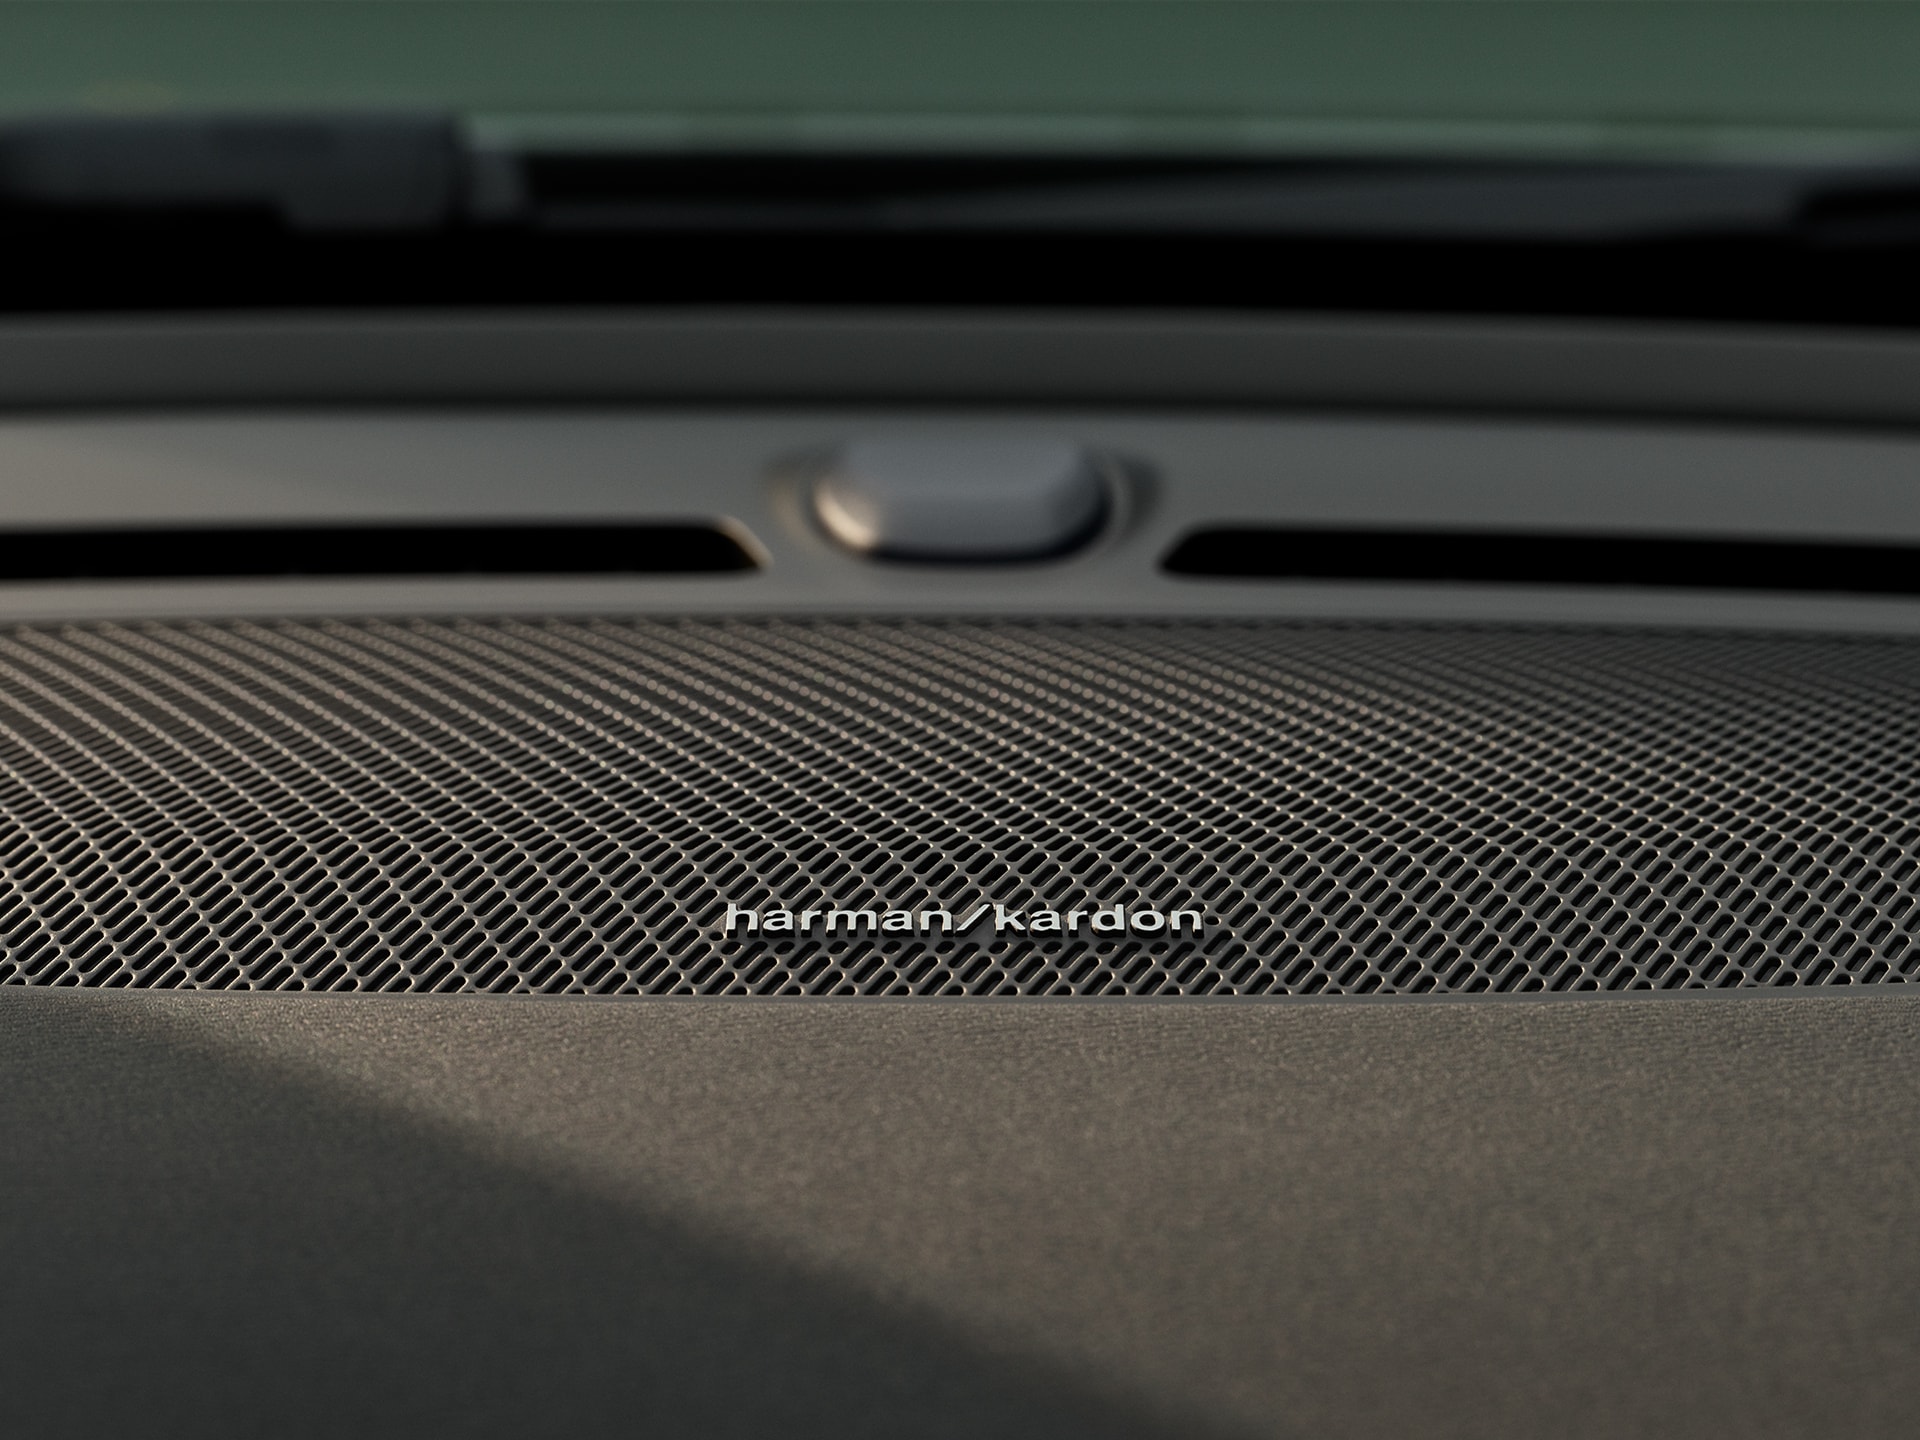 Immagine dettagliata dell'altoparlante Harman Kardon nella portiera di Volvo XC40 Recharge.